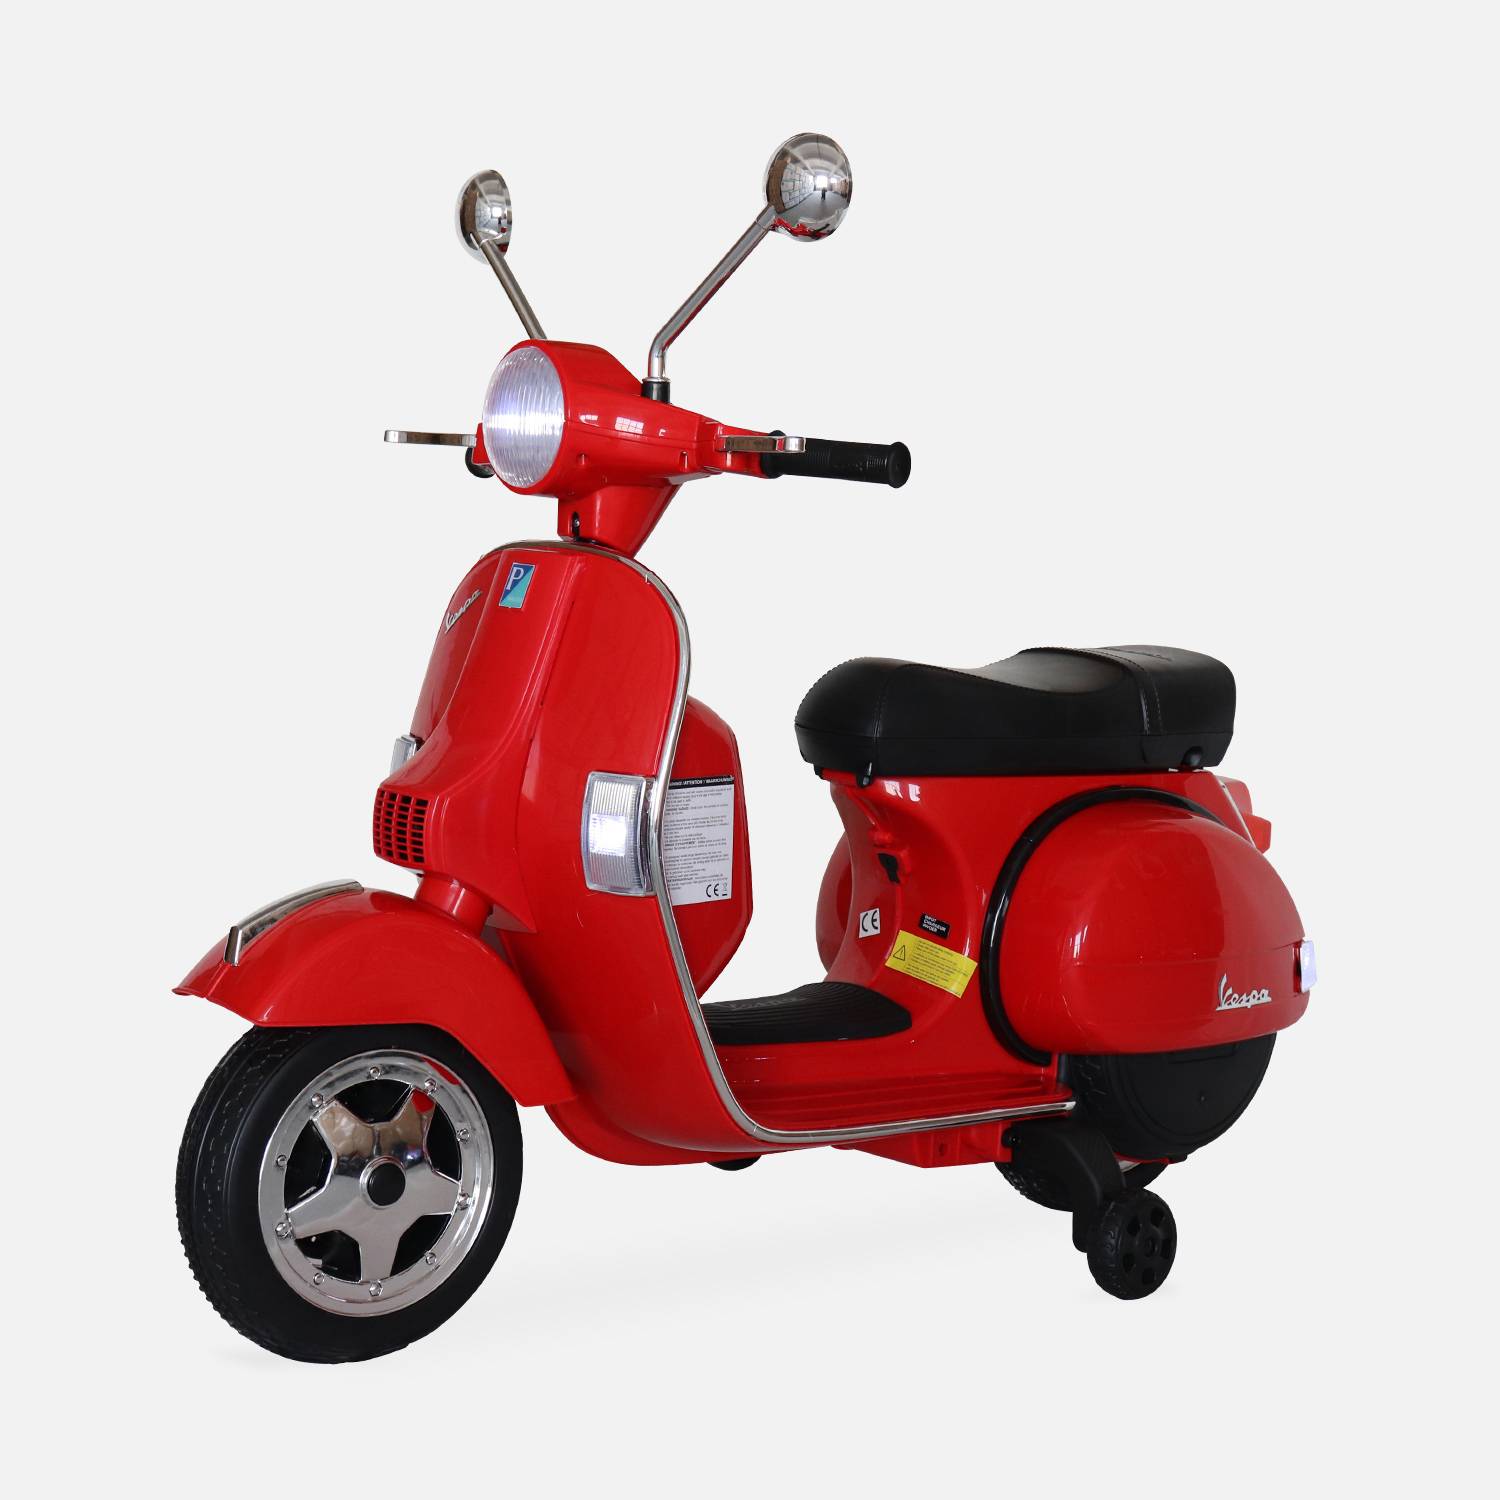 Rood Vespa PX150, elektrische scooter voor kinderen 12V 4.5Ah, 1 plaats met radio Photo1